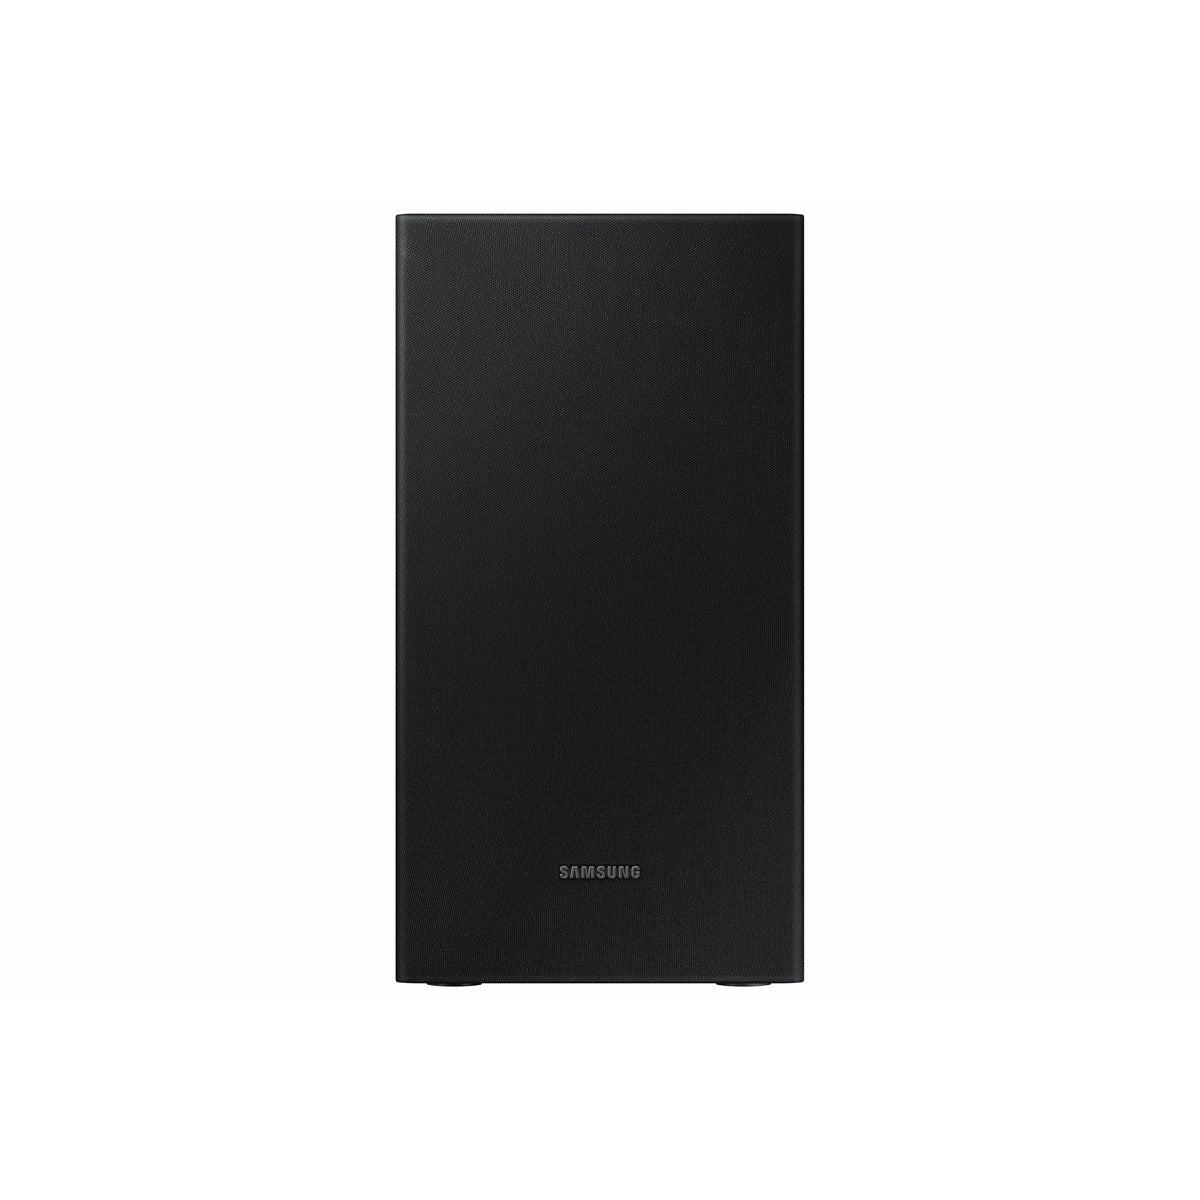 Open Boxed/ Ex-Display - Samsung 2.1ch 200W Bluetooth Soundbar - Black | HW-T450/XU (6890865066172)